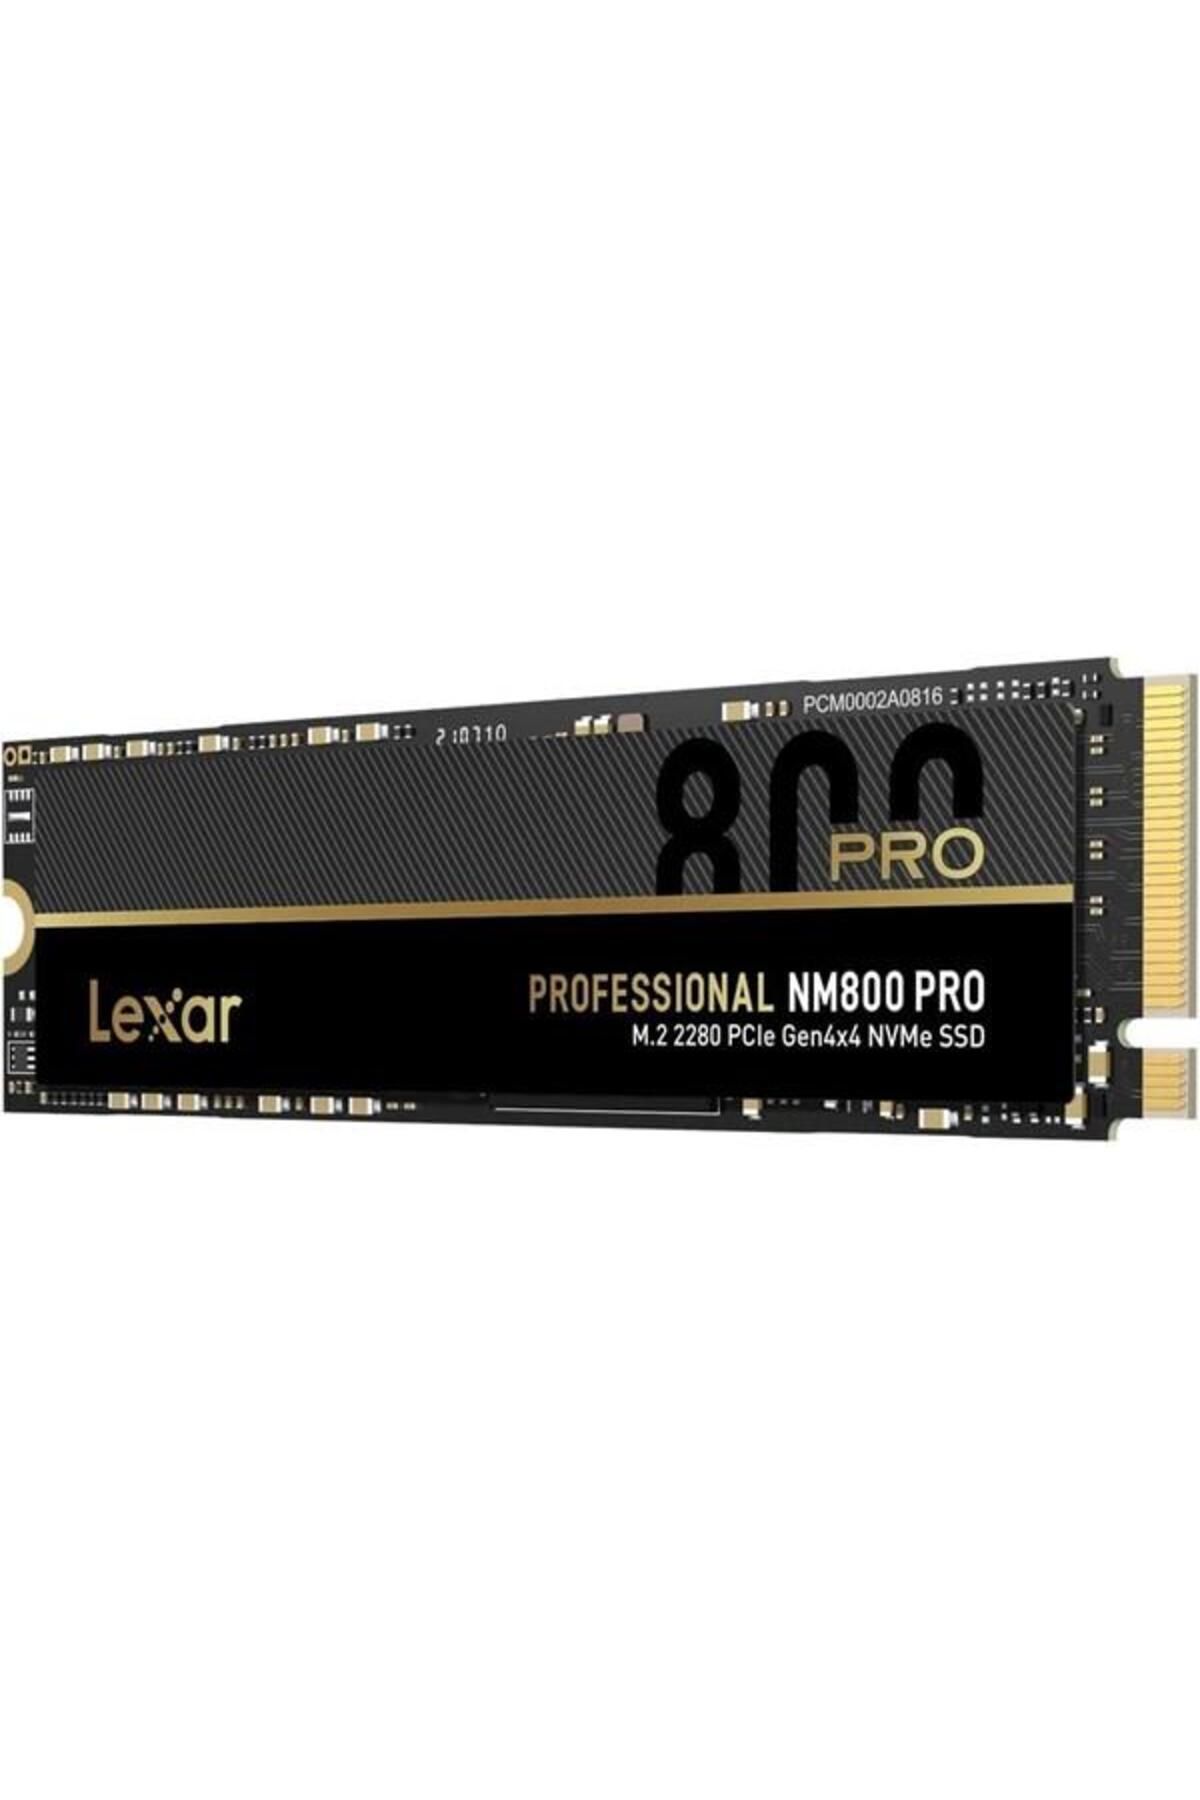 Lexar 1tb Pro Nm800 Lnm800p001t-rnnng 7400-5800mb/s M2 Nvme Gen4 Disk